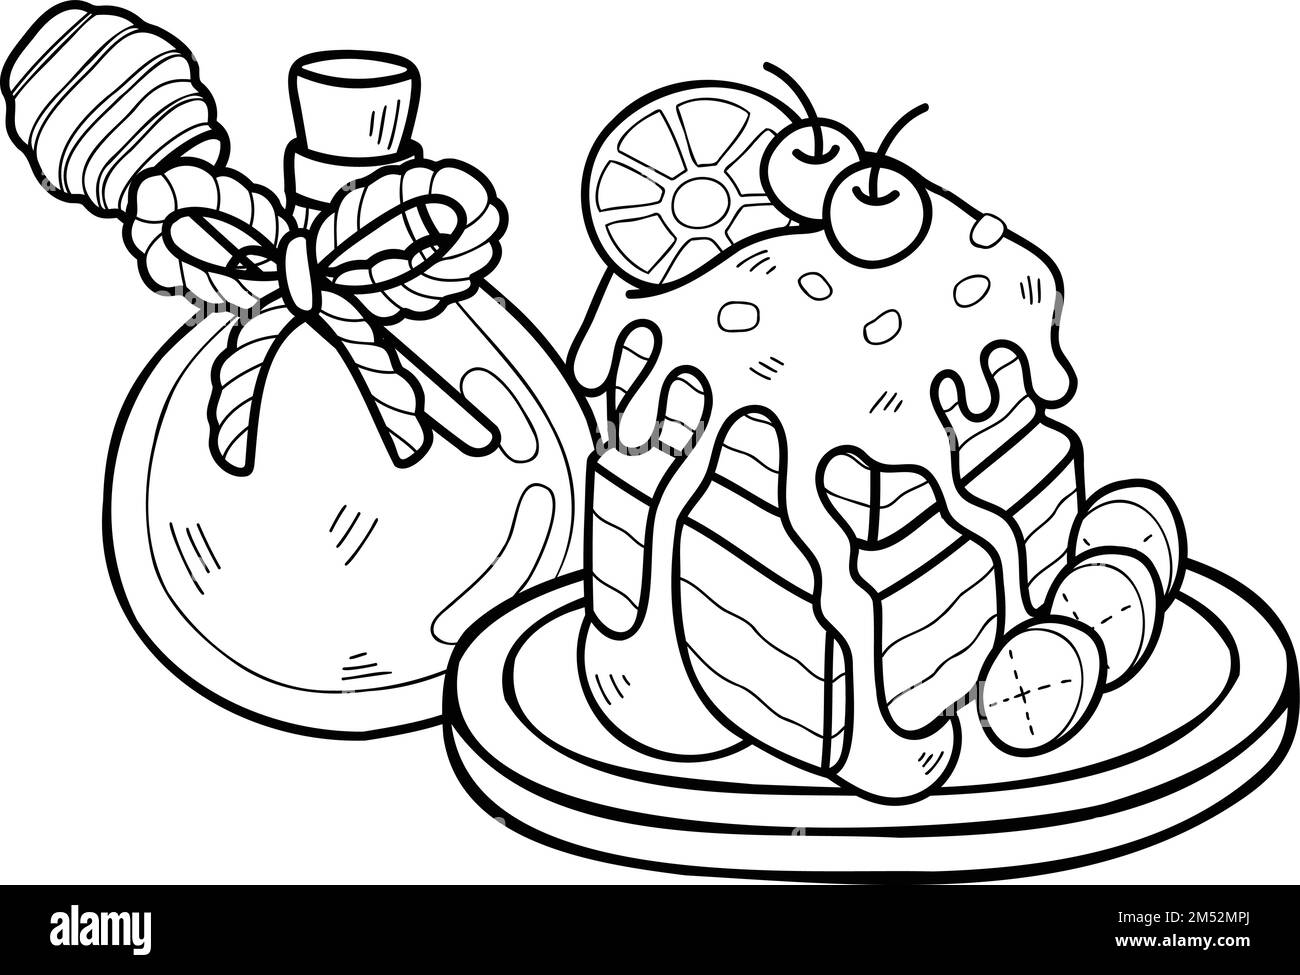 Handgezeichneter Schokoladenkuchen mit Illustration von Honig im Hintergrund Stock Vektor